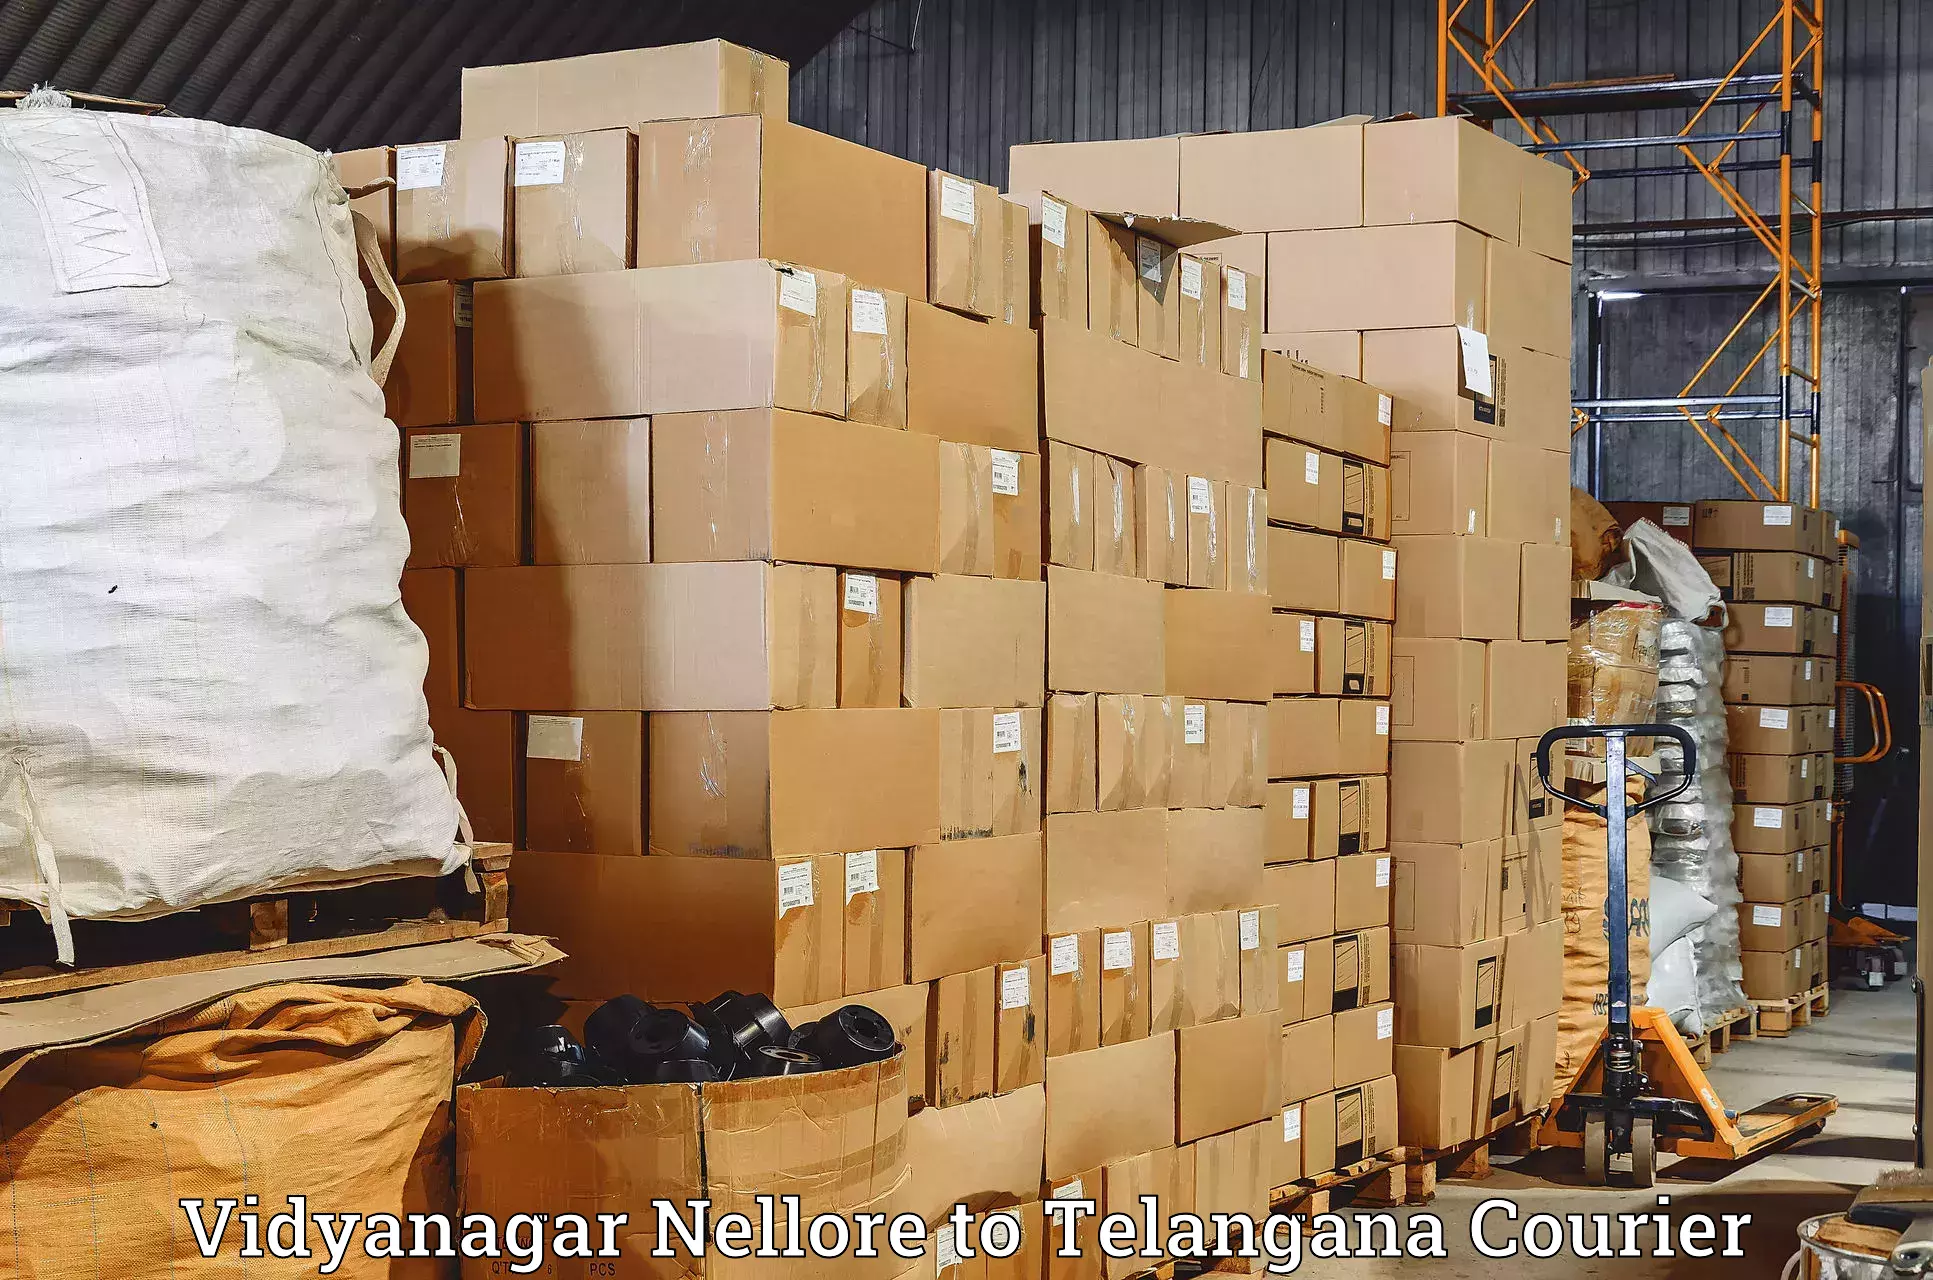 Courier service comparison Vidyanagar Nellore to Mudigonda